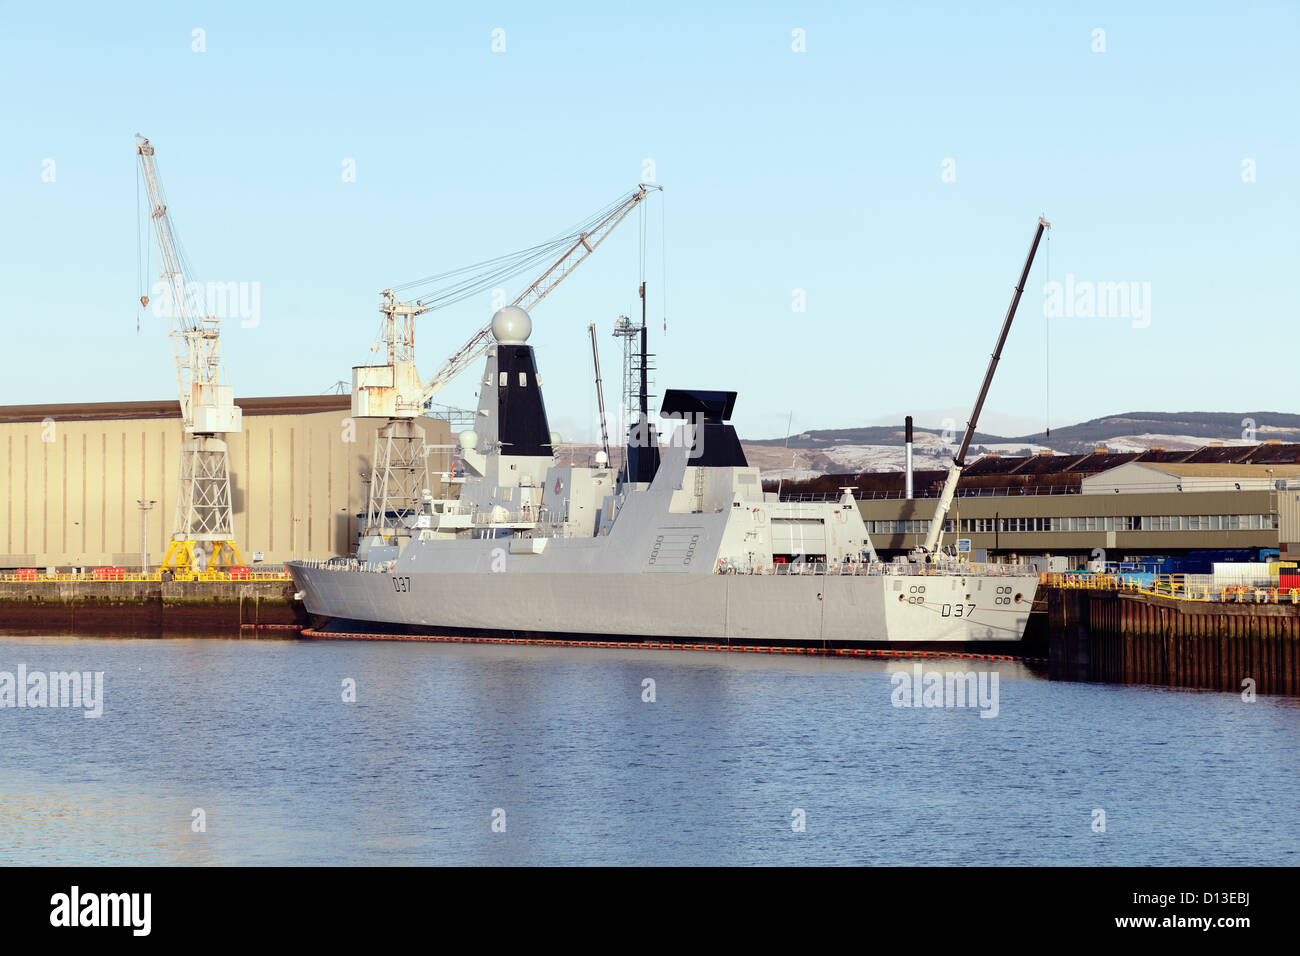 Königliche Marine Art 45 Zerstörer HMS Duncan auf dem Fluss Clyde bei BAE Systems Werft in Scotstoun, Glasgow, Schottland, UK Stockfoto